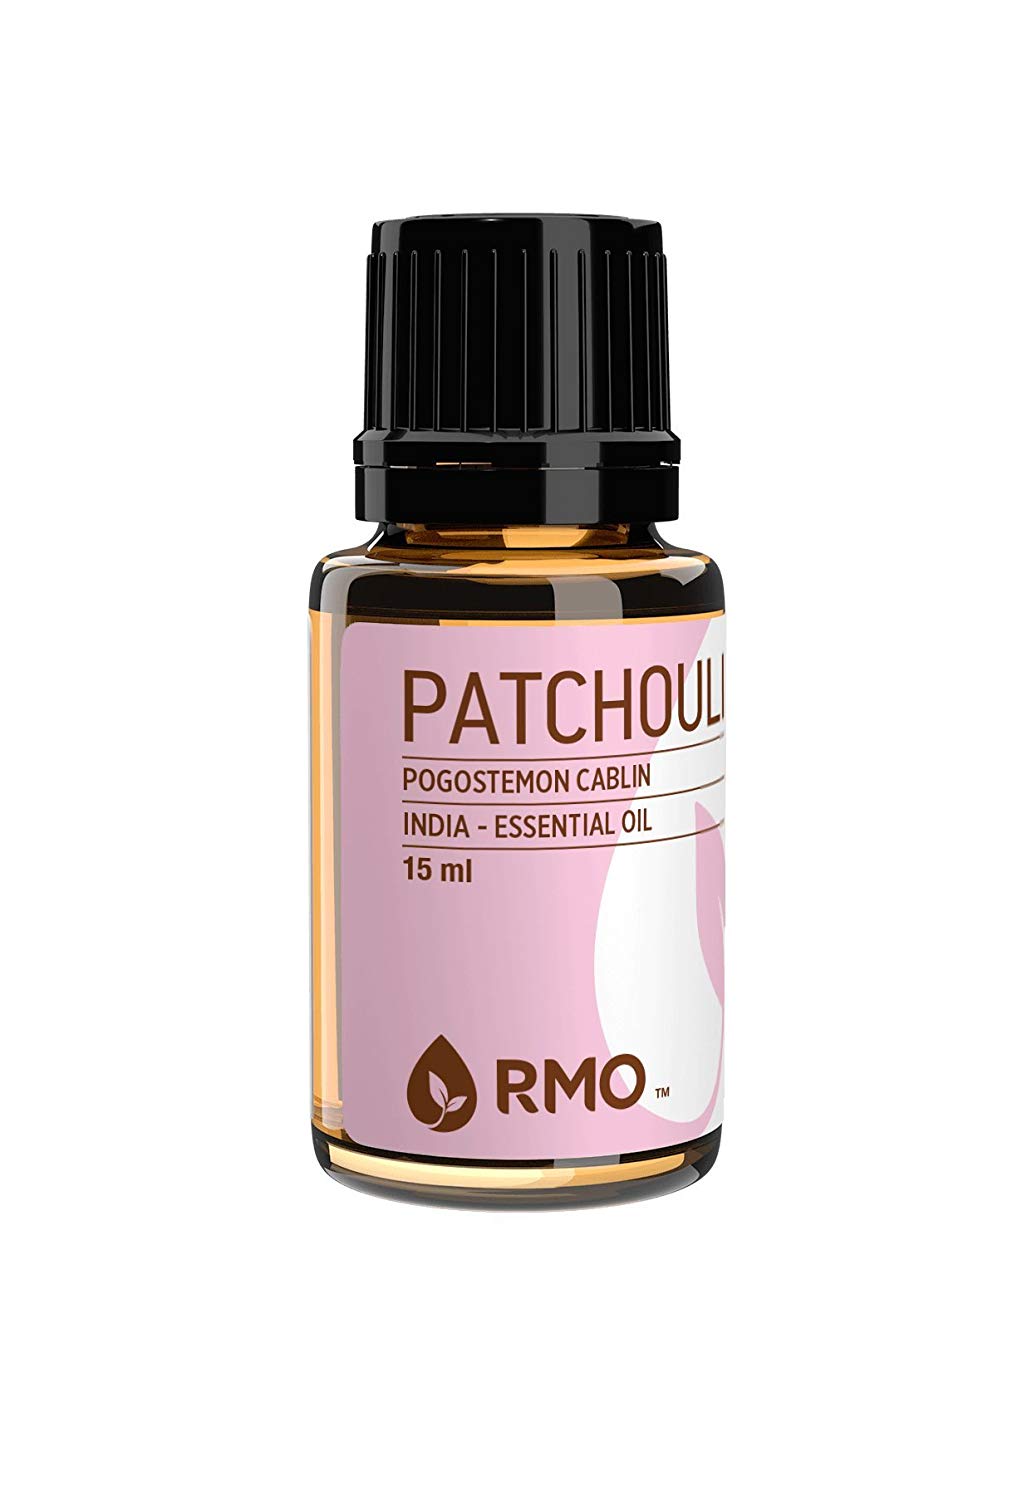 Patchouli oil benefits